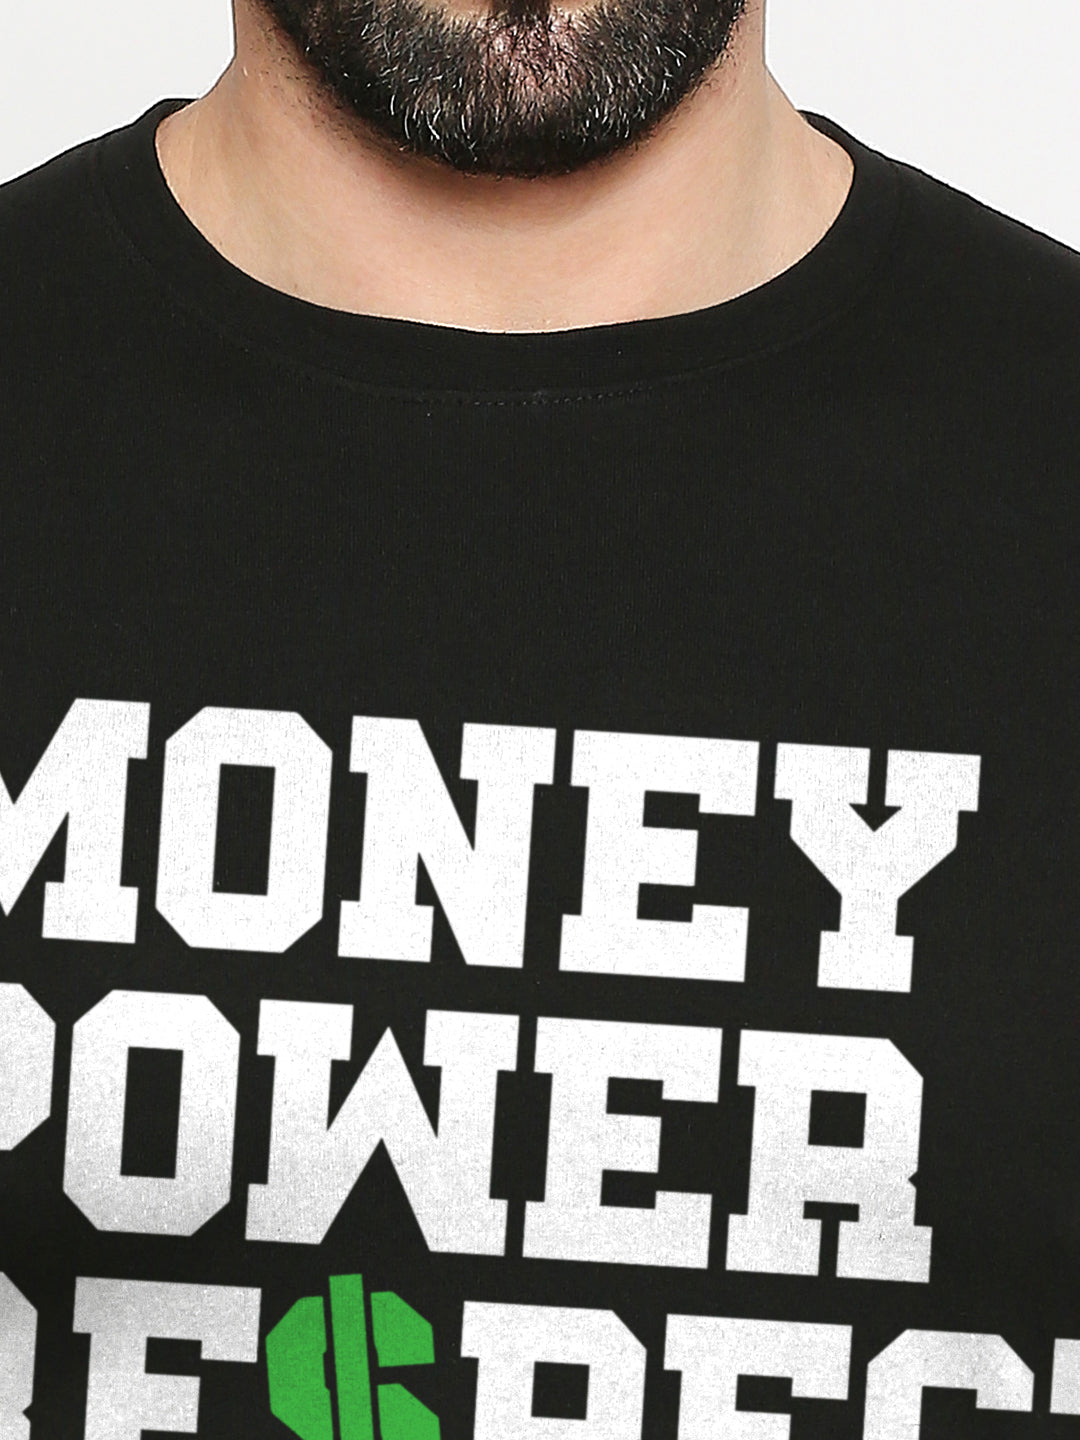 Money Power Re$pect T-Shirt